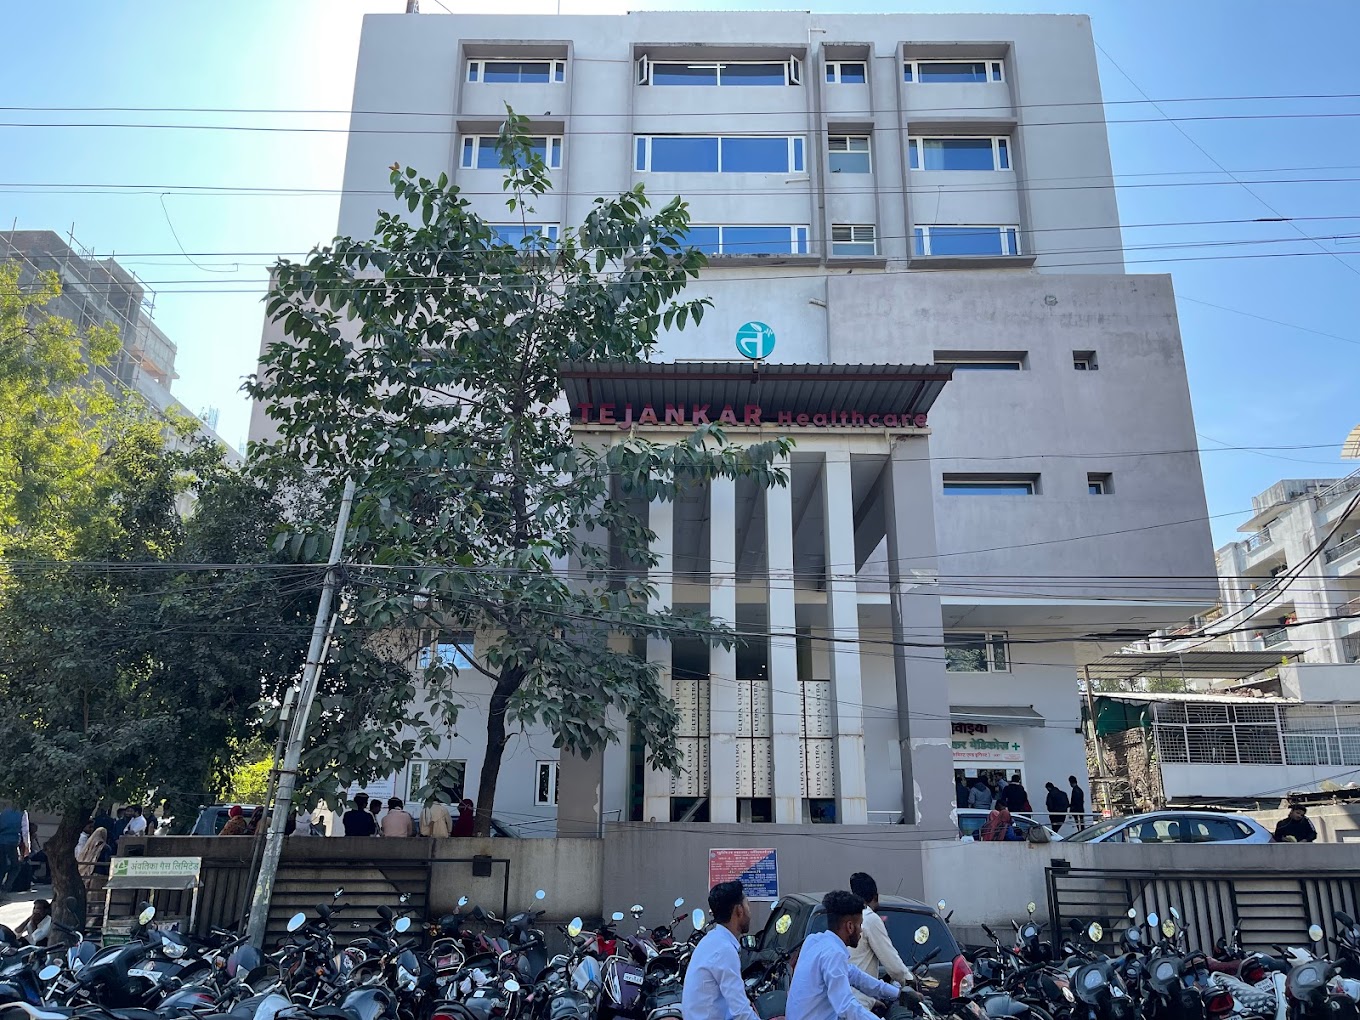 Tejankar Hospital